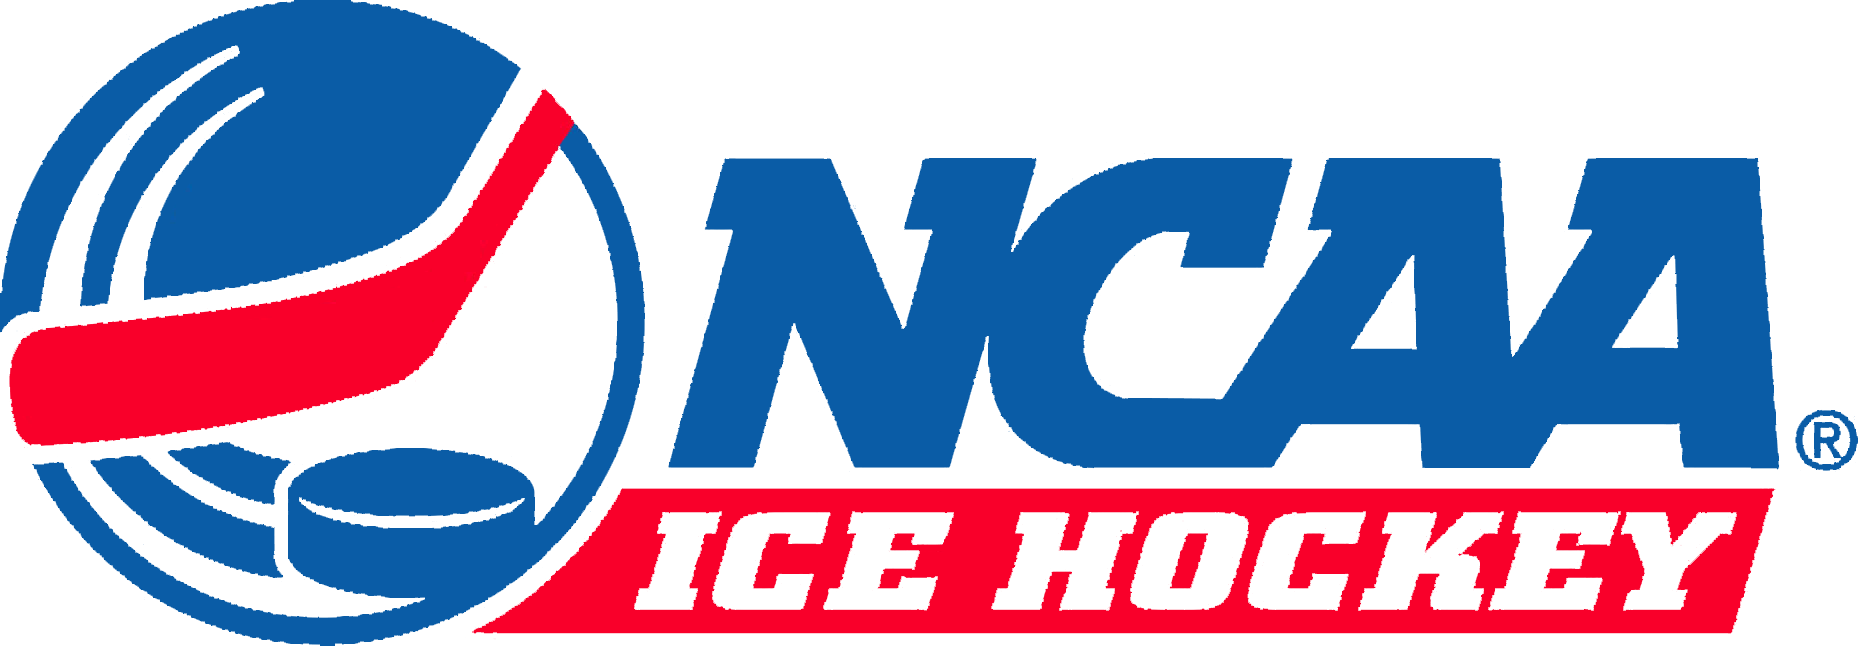 NCAA Ice Hockey logo